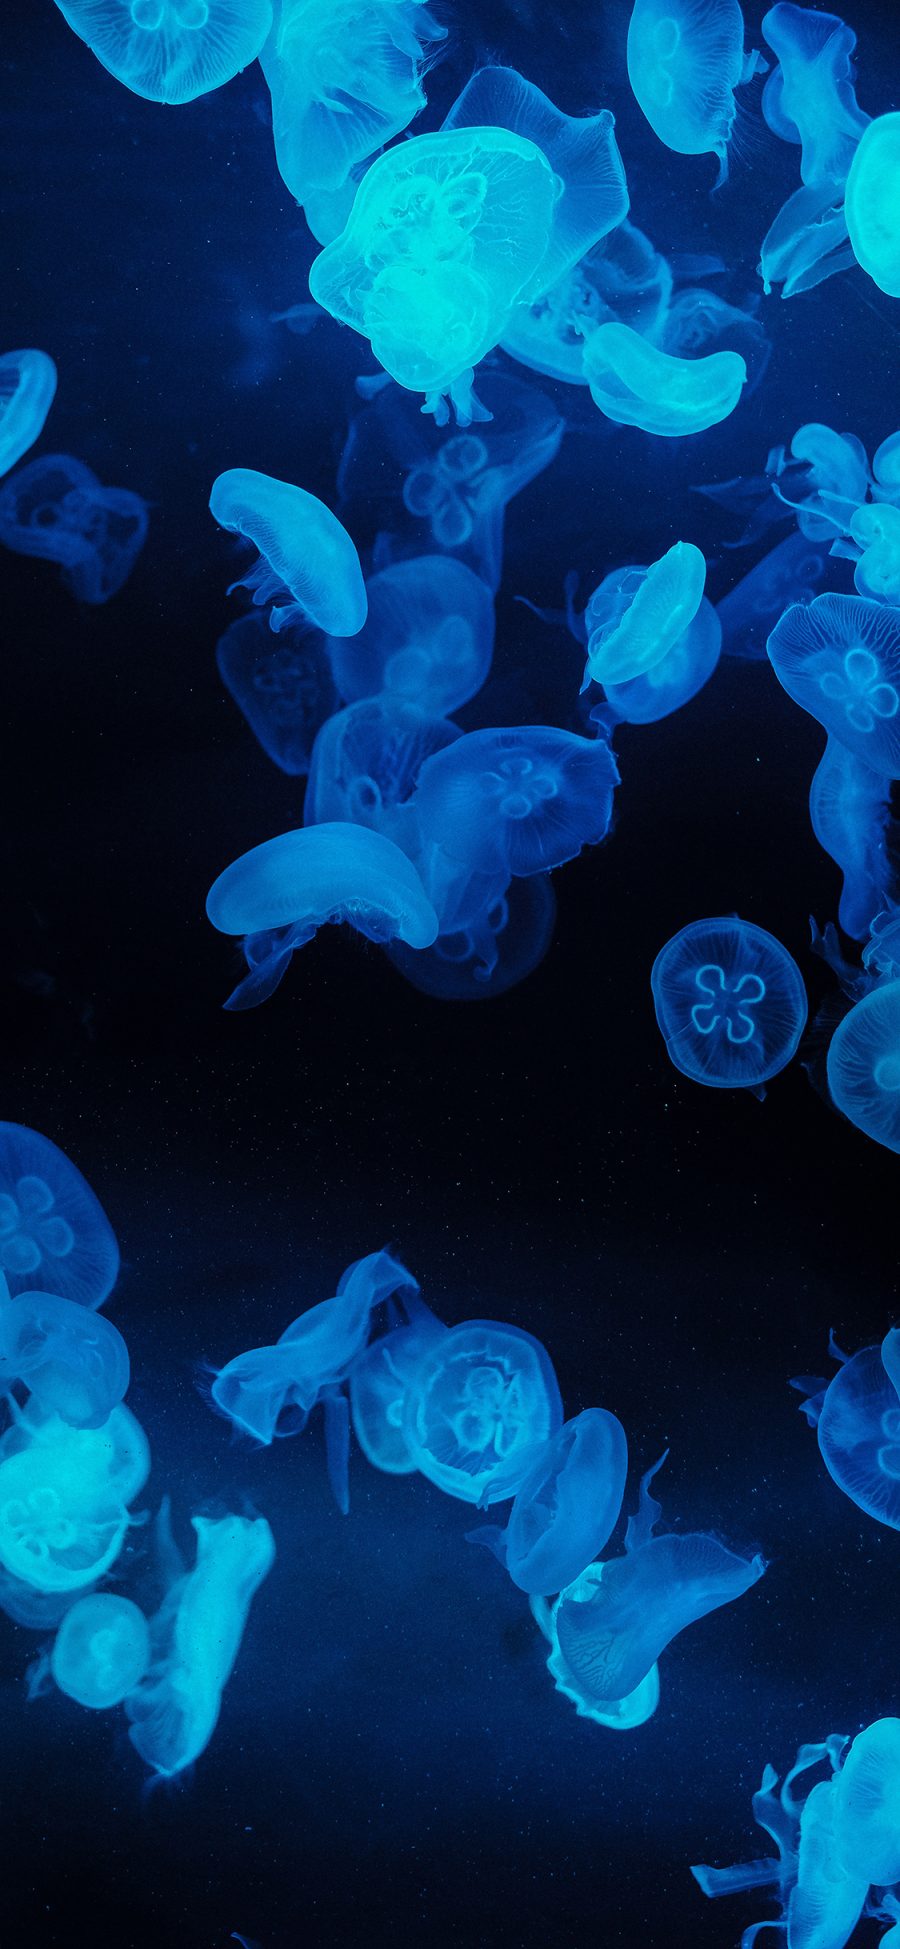 [2436×1125]水母 海洋生物 透明 黑暗 苹果手机壁纸图片